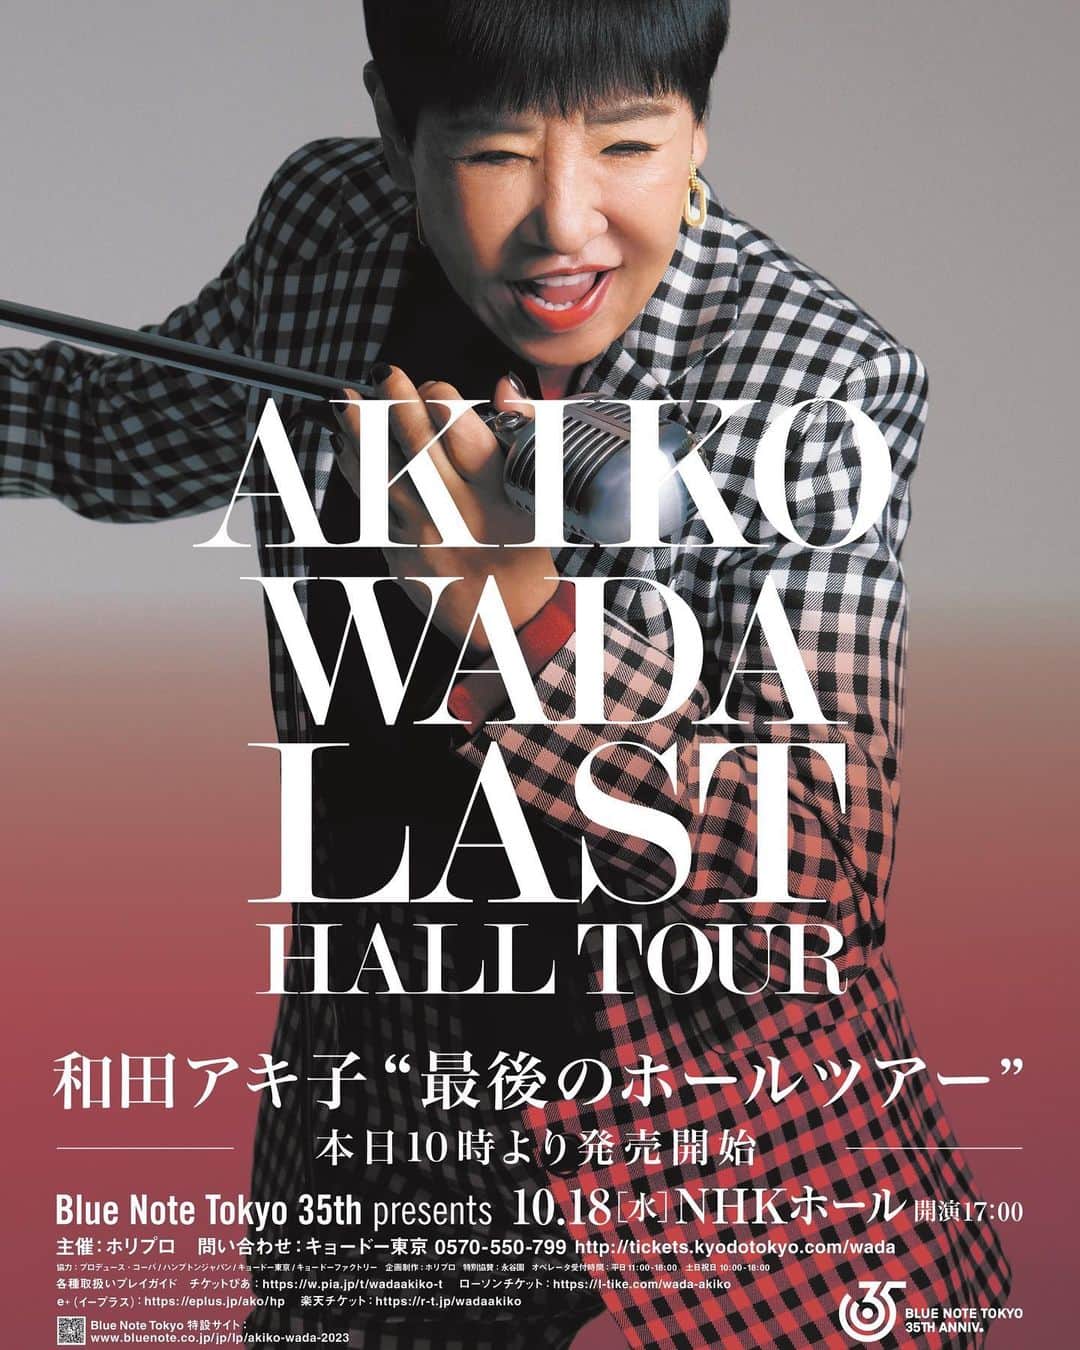 和田アキ子のインスタグラム：「Blue Note Tokyo 35th presents  AKIKO WADA LAST HALL TOUR 本日より一般販売が開始されました😊😊 今朝の朝日新聞には、全面広告で掲載していただきました❣️❣️是非、皆さんお越しいただけると嬉しいです😍😍  詳しくは、特設ページをチェックしてください😊😊 https://www.bluenote.co.jp/jp/lp/akiko-wada-2023/  #ako55th」